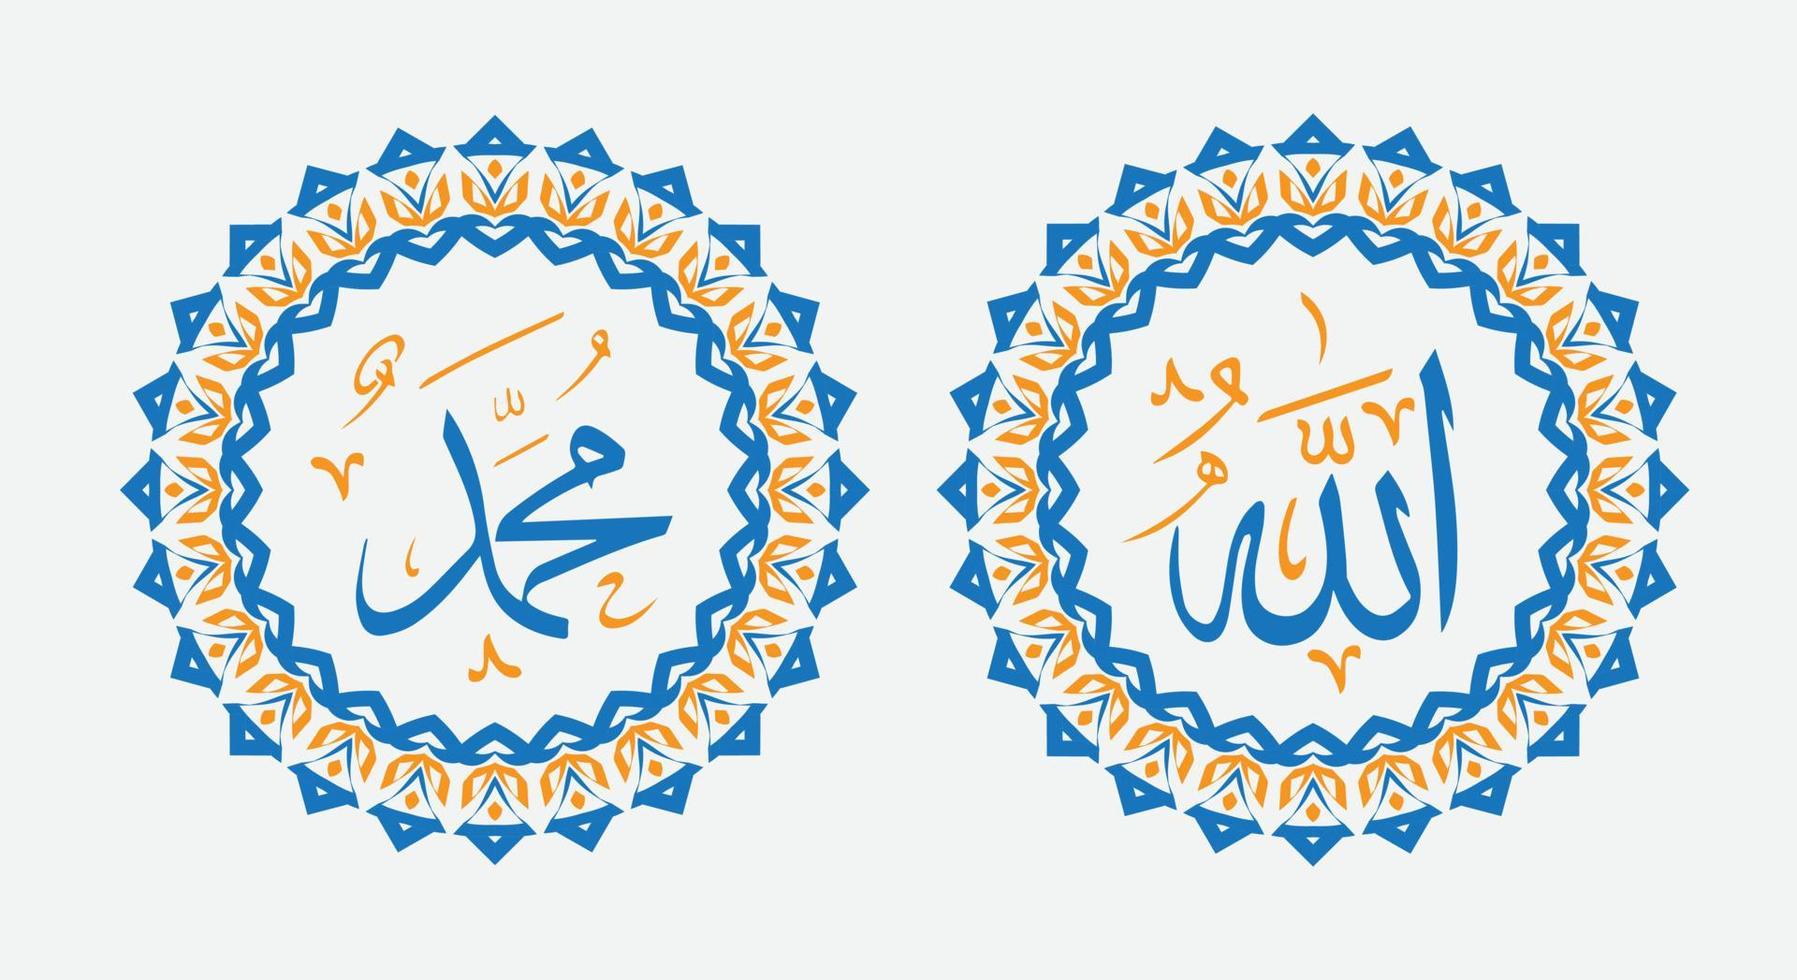 traduire ce texte de la langue arabe en anglais est, muhammad, allah, donc cela signifie dieu en musulman. ensemble deux d'art mural islamique. décoration murale allah et muhammad. papier peint musulman minimaliste. vecteur